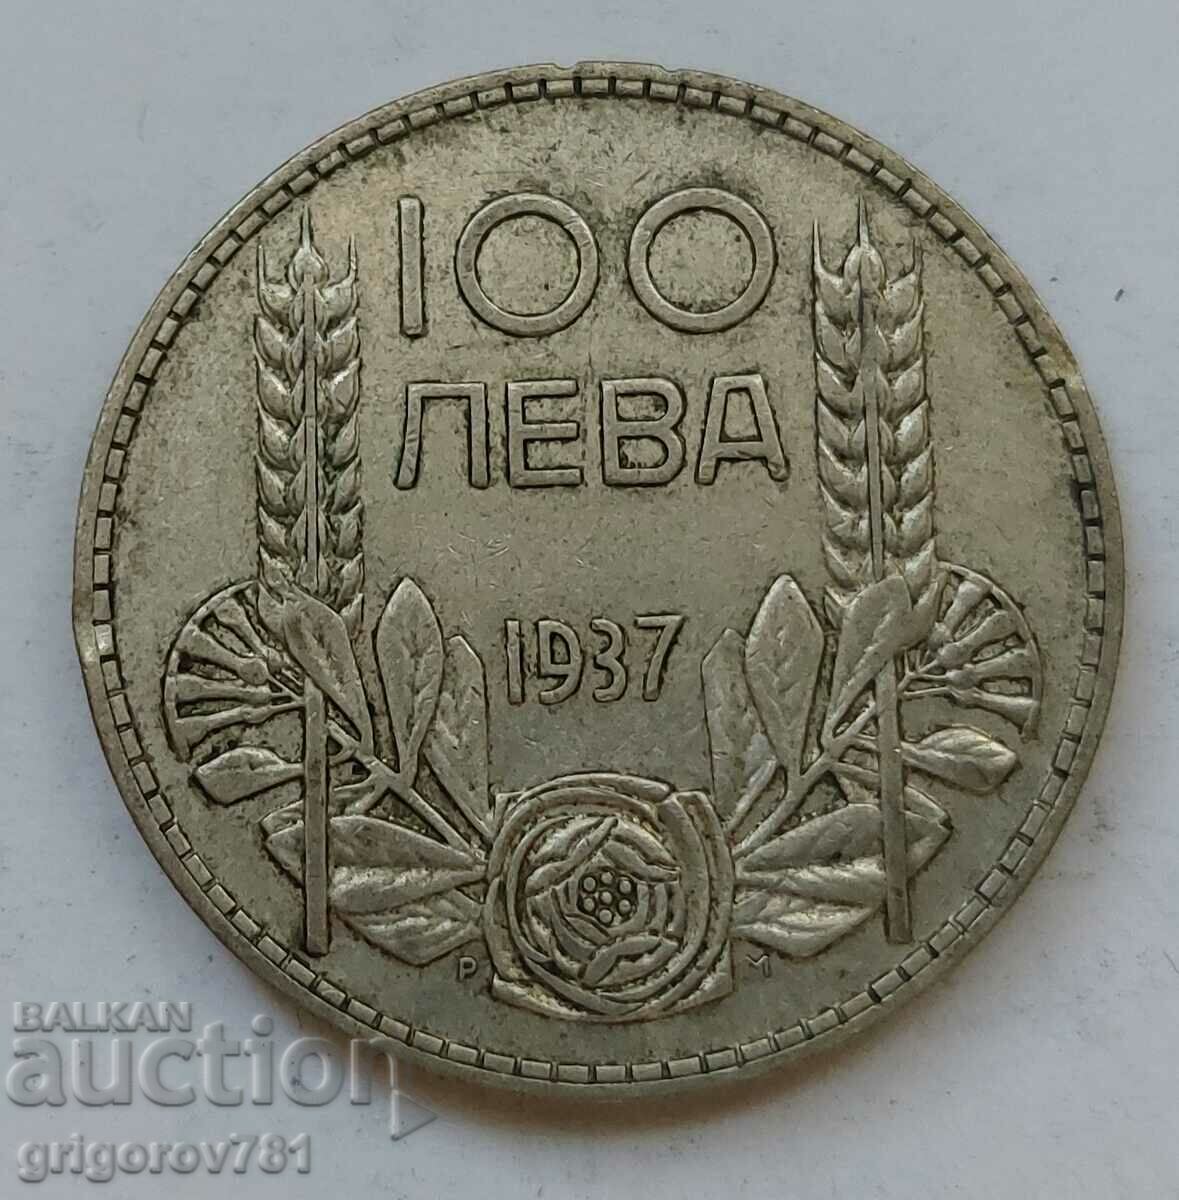 100 leva silver Bulgaria 1937 - silver coin #144